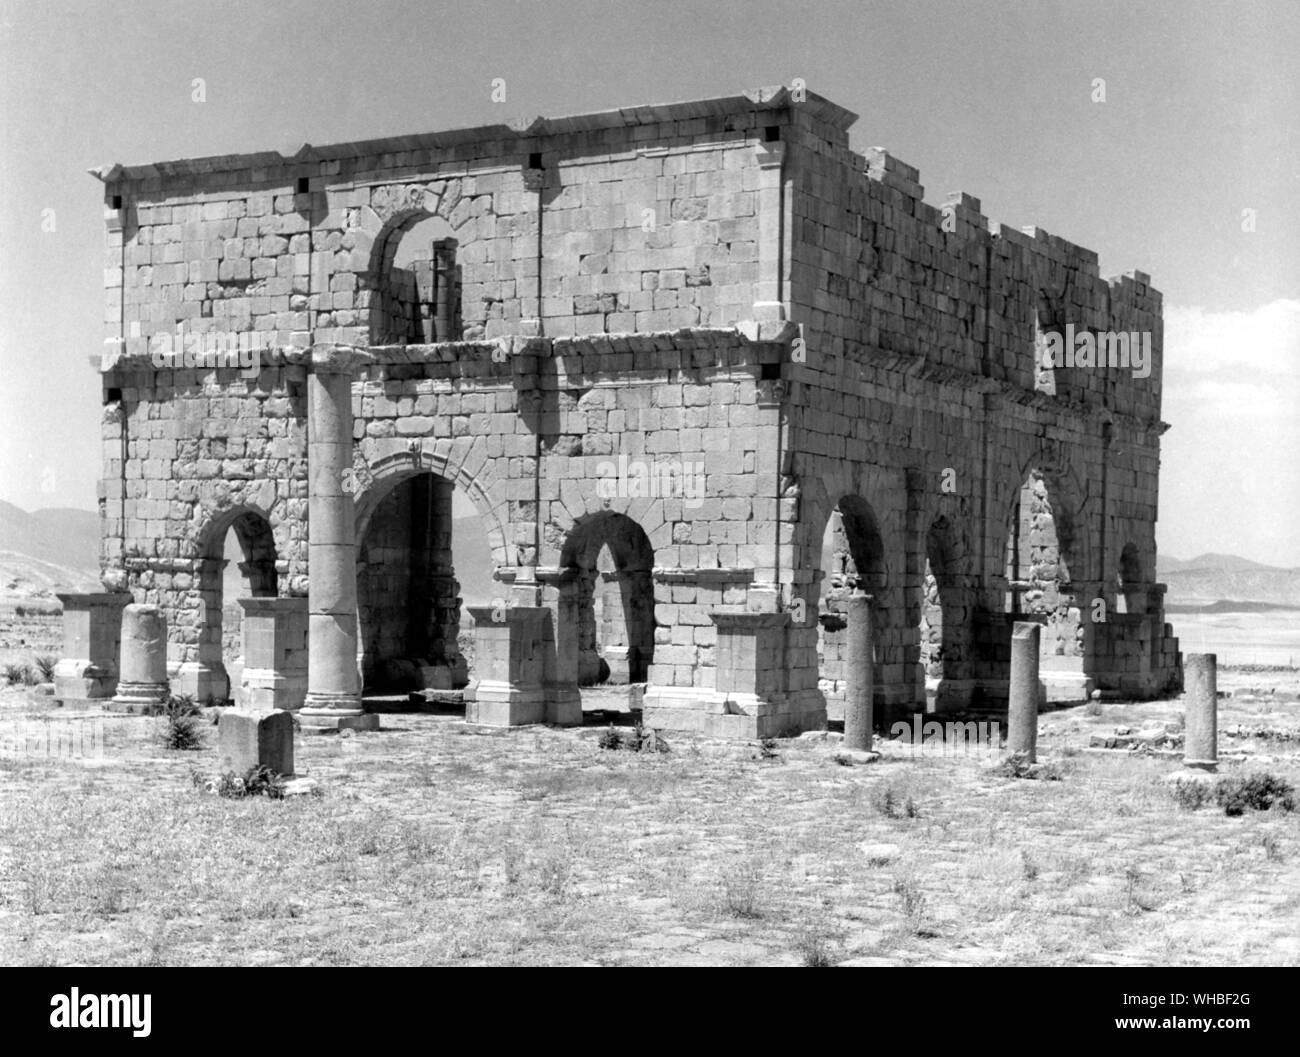 Lambessa, le siège de la Camp de légionnaires romains - Hall d'entrée - Lambaesis, ou Lambaesa, est une ruine romaine en Algérie, à 11 kilomètres au sud-est de Batna et 17 milles à l'ouest de Timgad, situé à proximité de la village moderne de Tazoult. Les vestiges de la ville romaine, et plus particulièrement du camp romain, malgré le vandalisme aveugle, sont parmi les ruines les plus intéressants en Afrique du Nord. Les ruines sont situées sur les terrasses inférieures des Montagnes des Aurès, est composé d'arcs de triomphe (un à Septime Sévère, un autre à Commodus), les temples, les aqueducs, les vestiges d'un amphithéâtre, des bains et un Banque D'Images